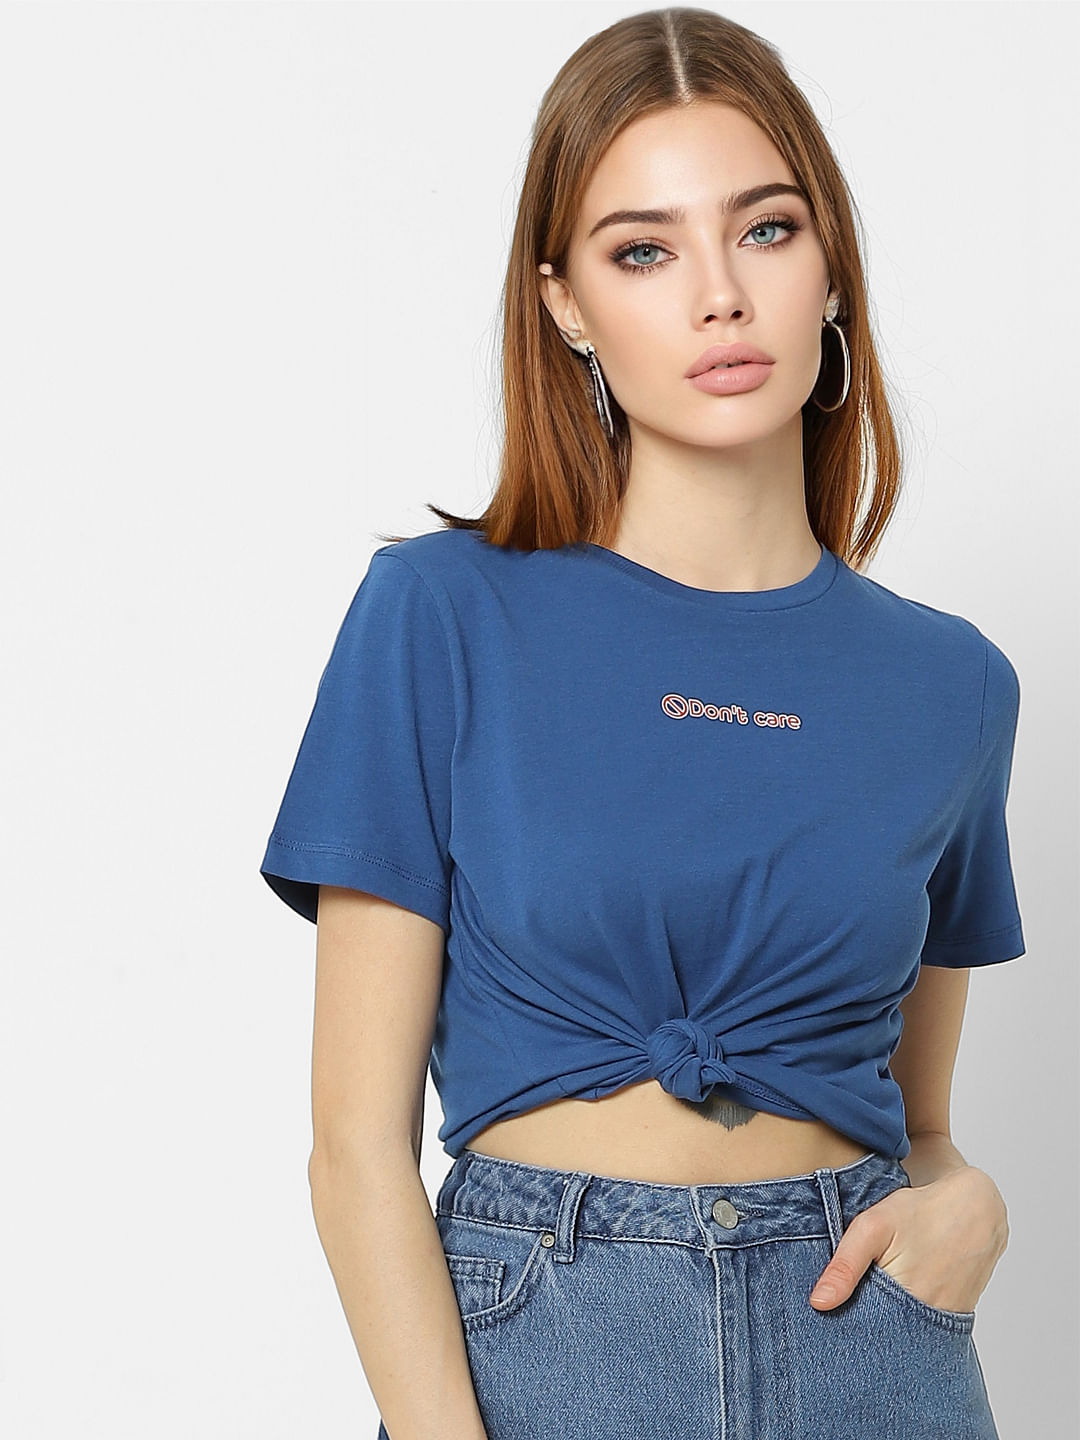 discount 56% WOMEN FASHION Shirts & T-shirts Lace VILA T-shirt Brown XS 